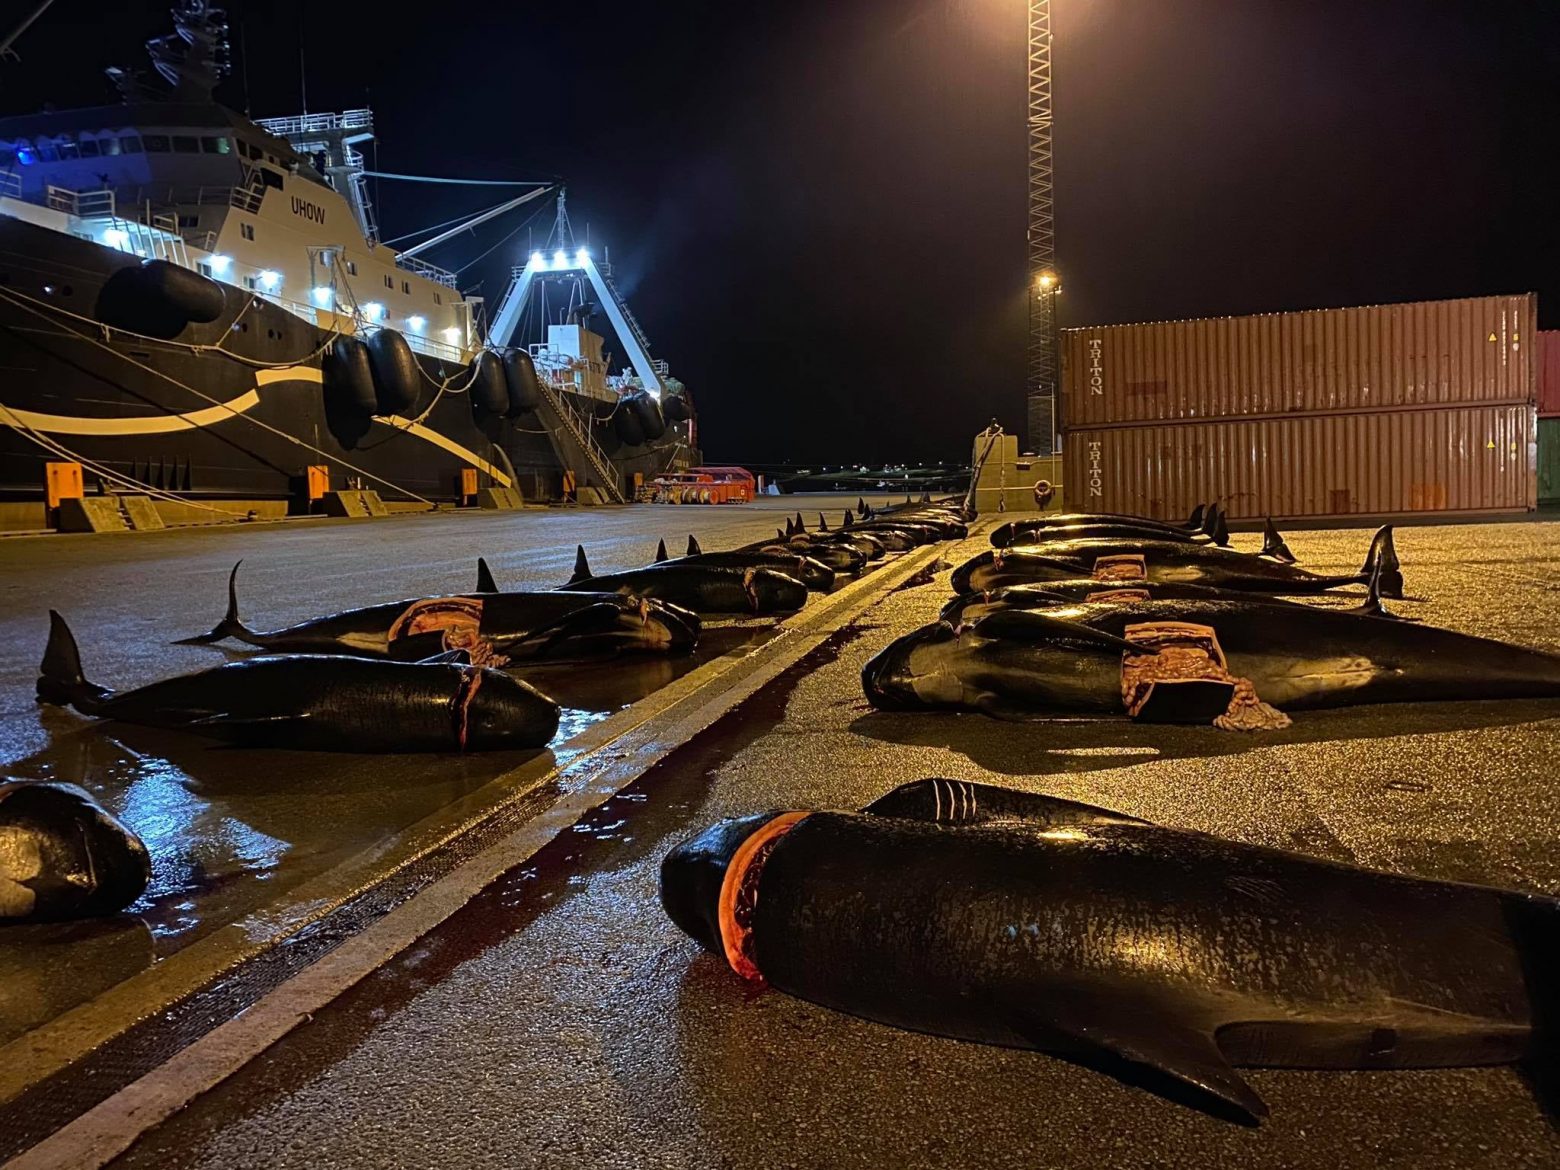 Νησιά Φερόε - H θάλασσα βάφτηκε ξανά «κόκκινη» - Σφαγιάστηκαν άλλα 52 δελφίνια